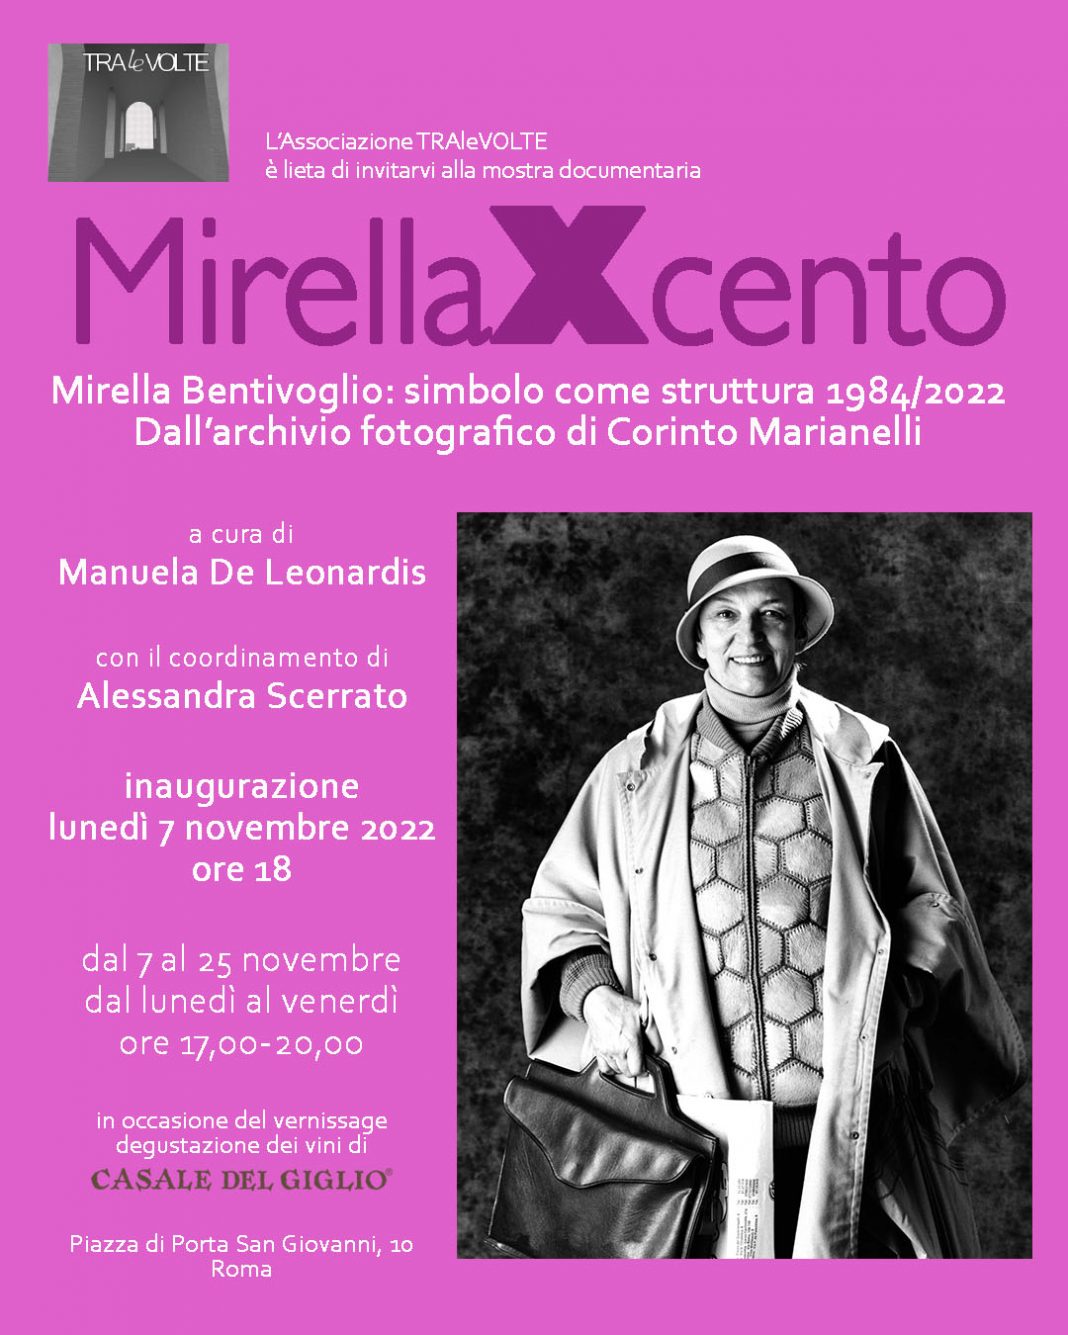 MirellaXcento – Mirella Bentivoglio: simbolo come struttura 1984/2022. Dall’archivio fotografico di Corinto Marianellihttps://www.exibart.com/repository/media/formidable/11/img/da9/Invito-Bentivoglio-1068x1335.jpg